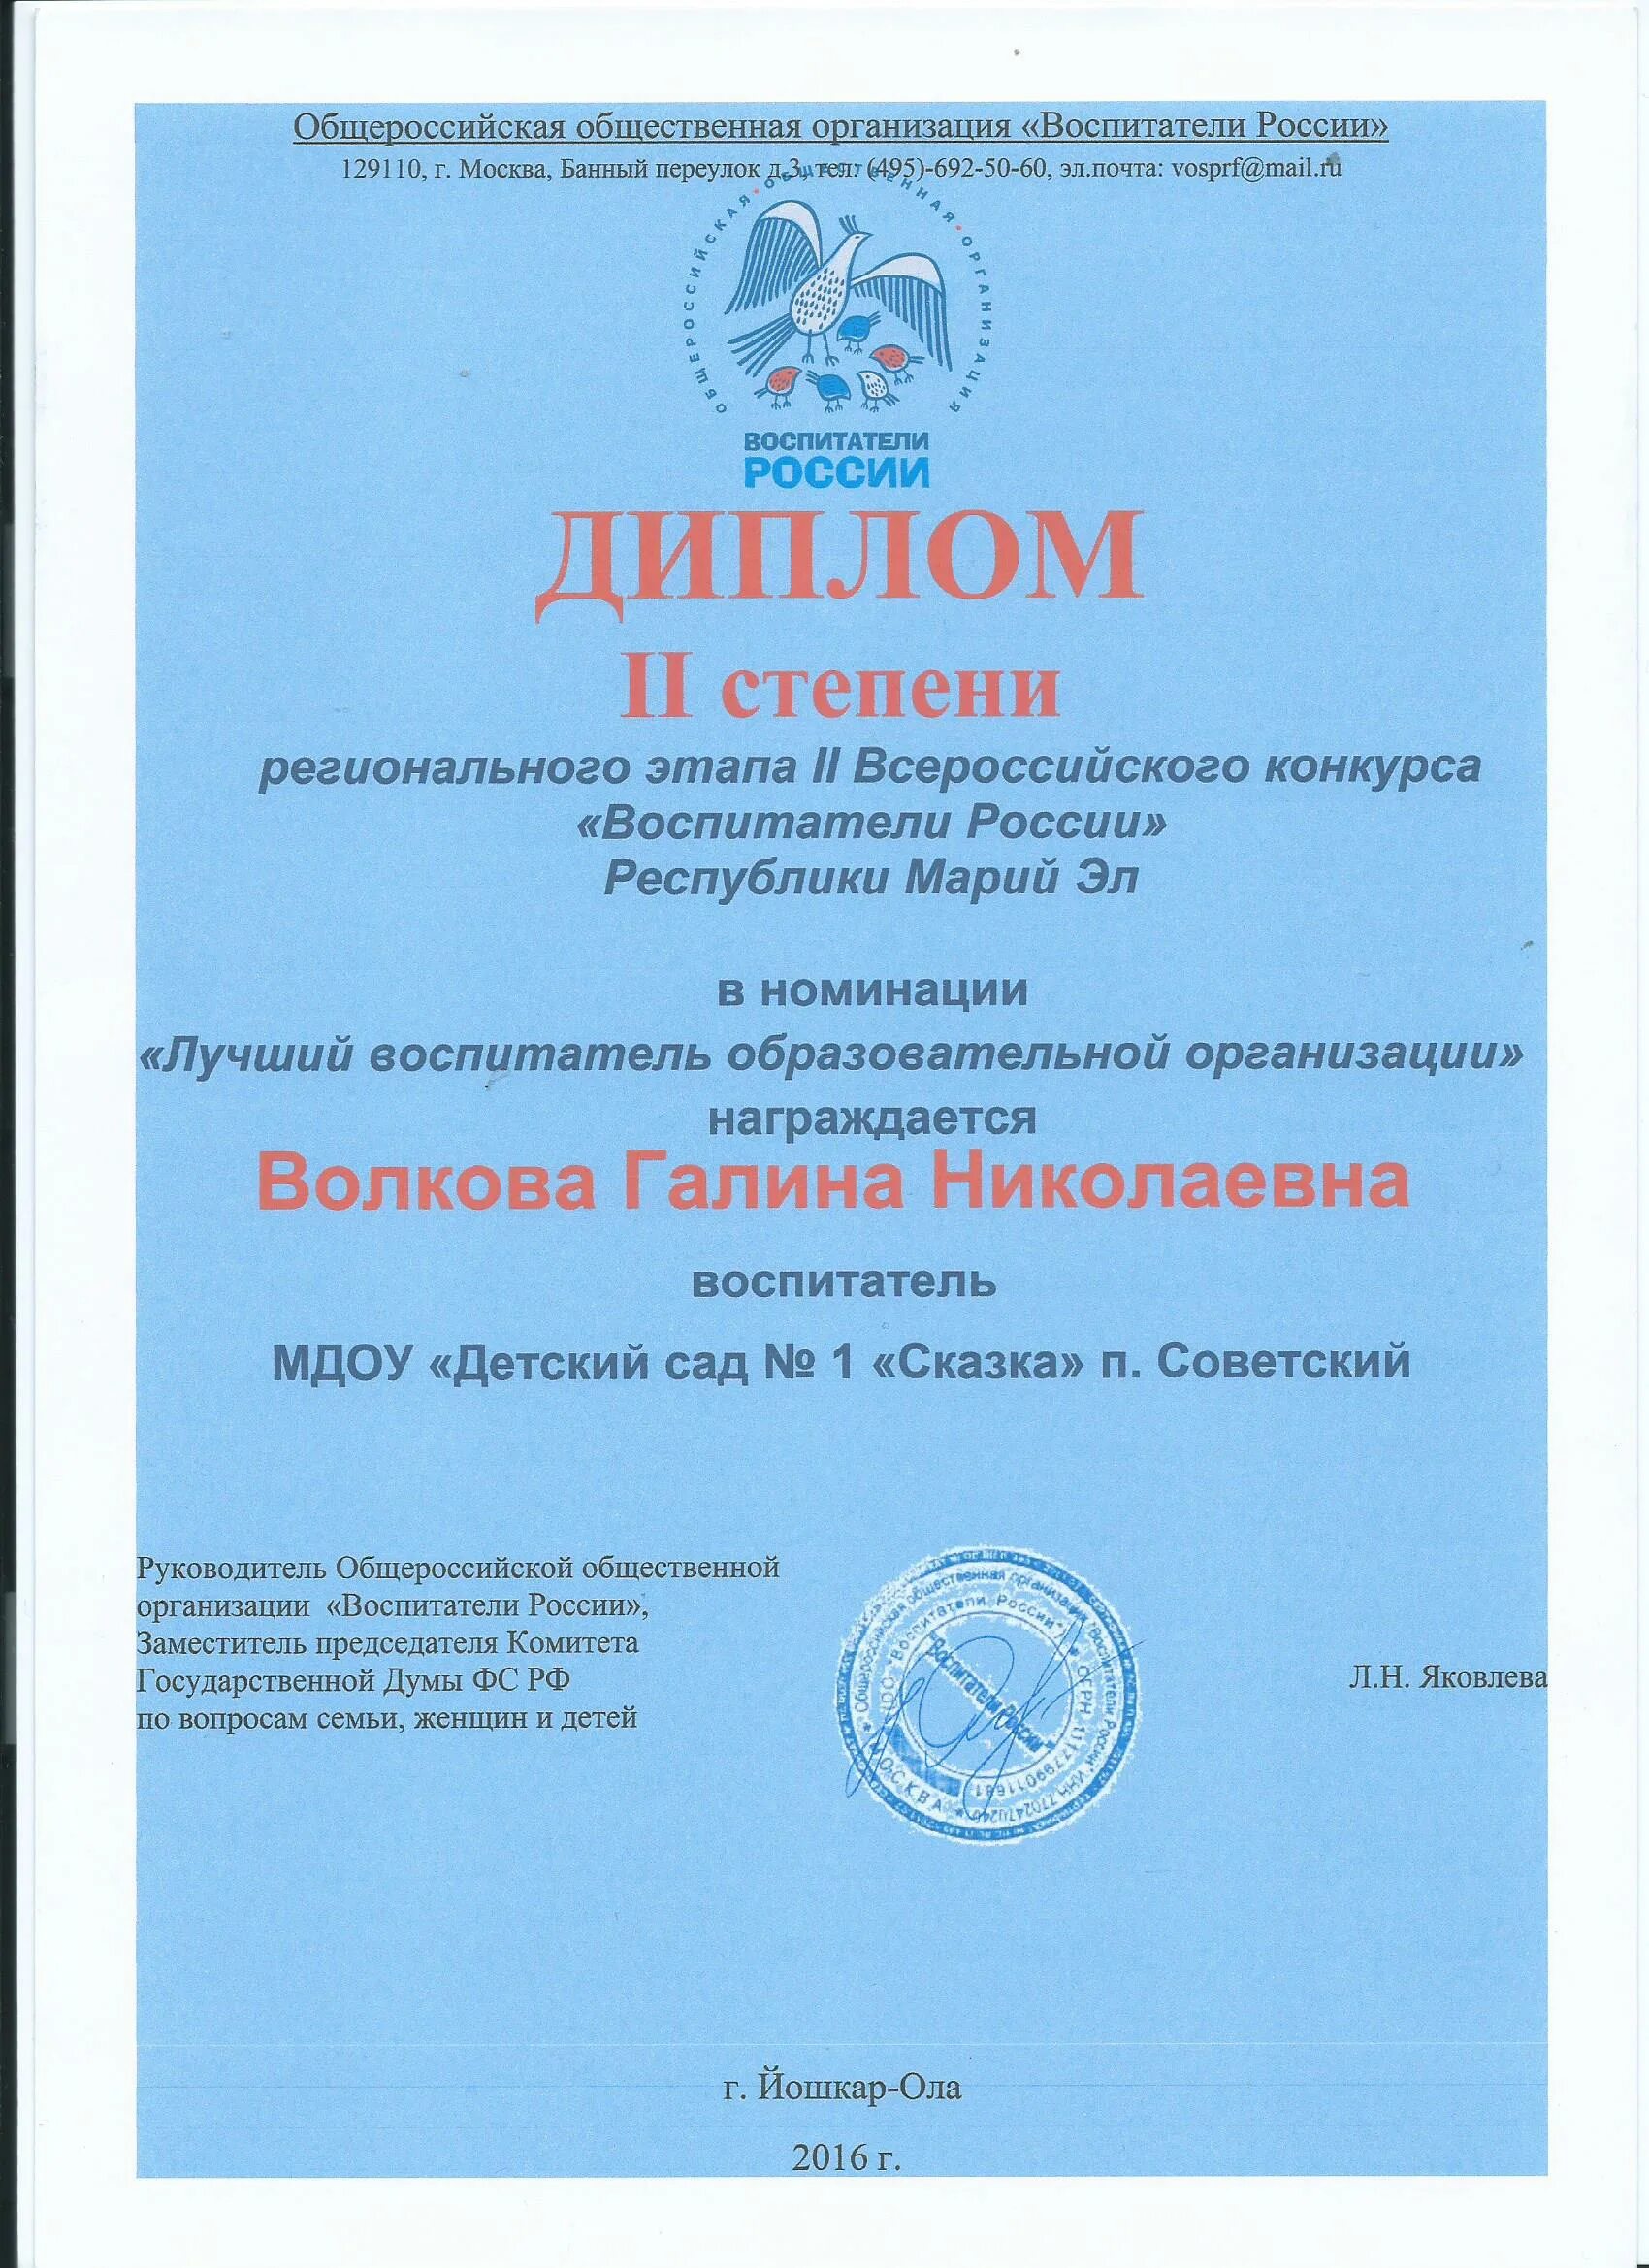 Воспитатели россии чеченская республика сертификат